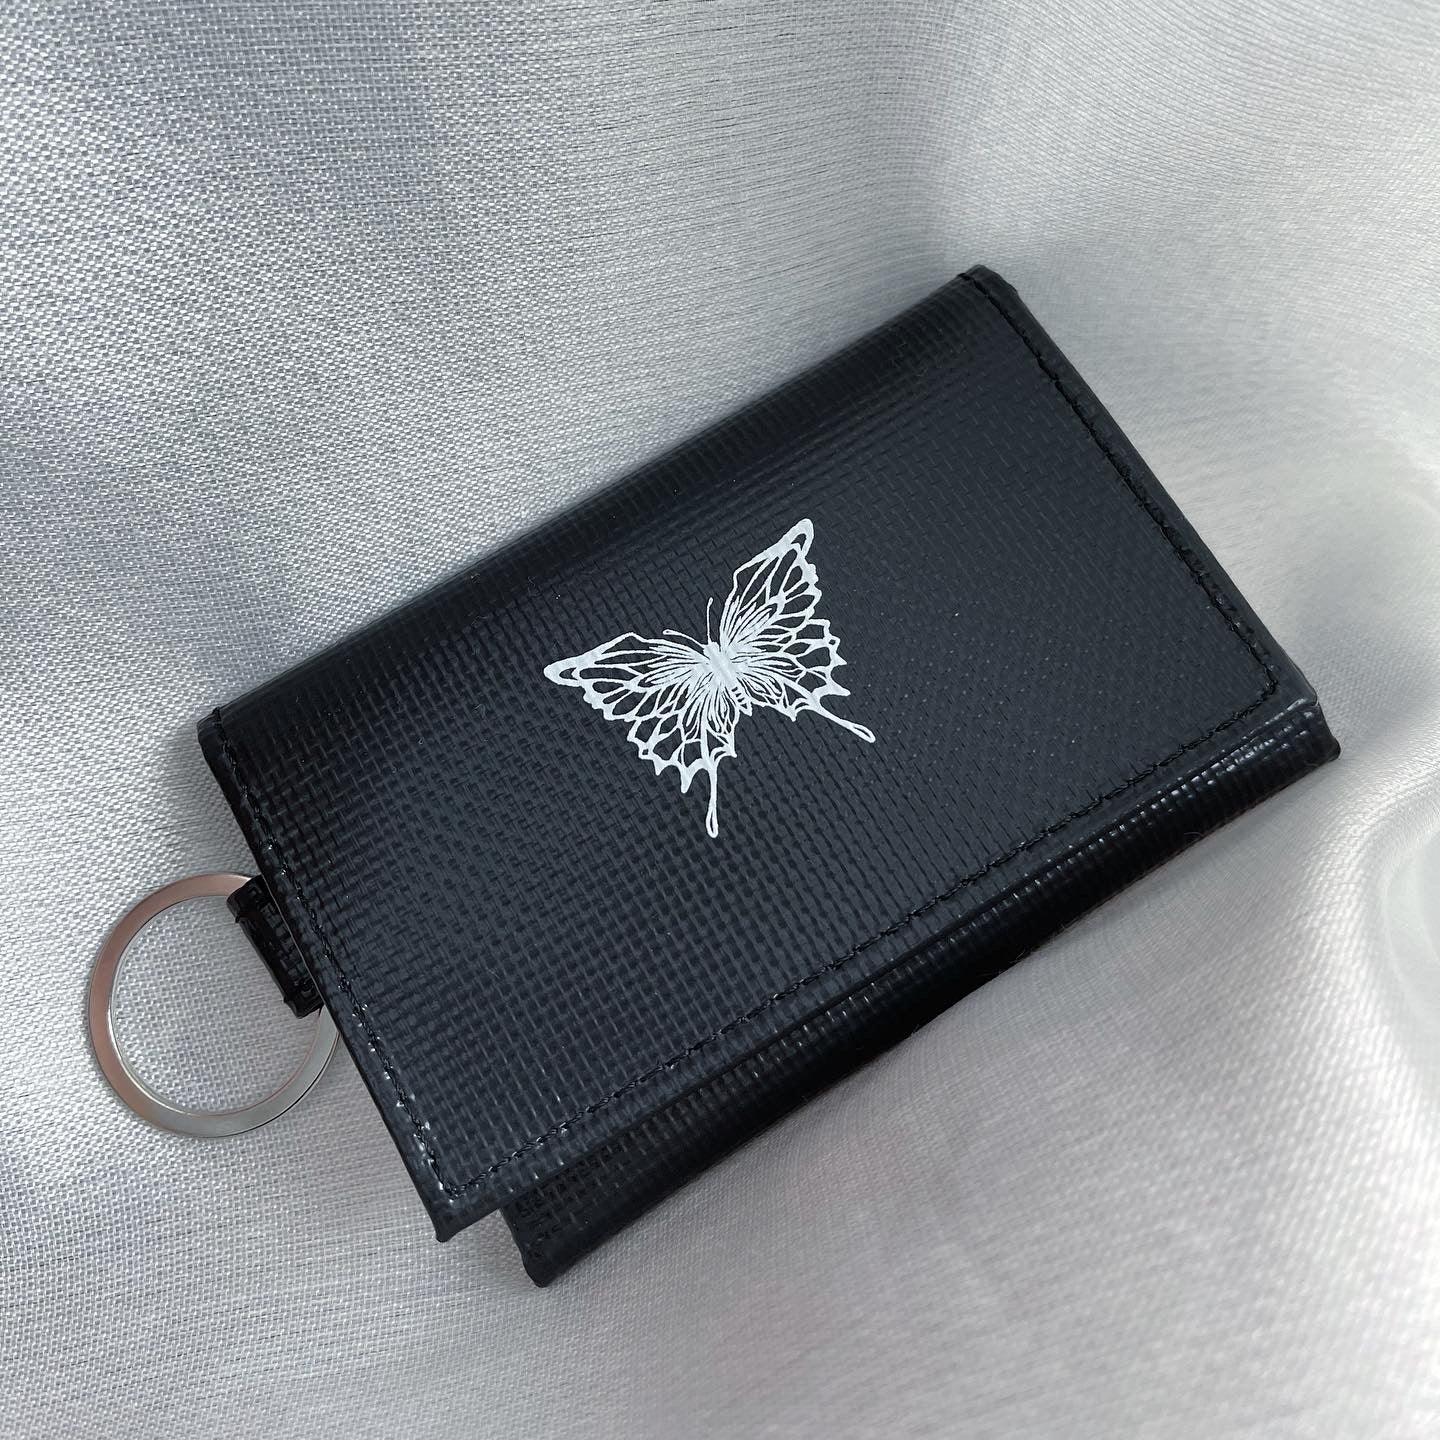 gibous butterfly Mini Key wallet